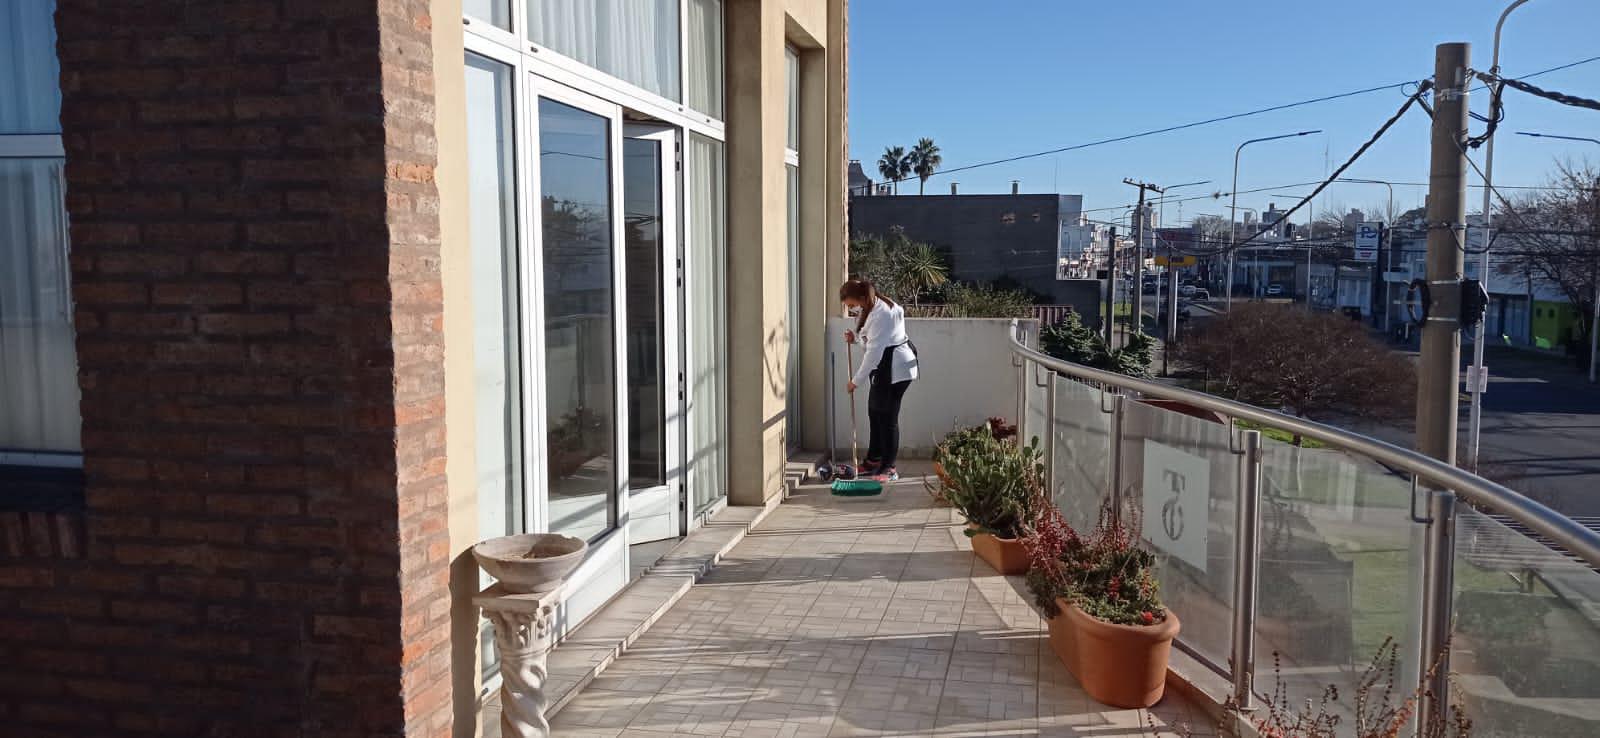 Departamento en venta  1 dormitorio , vista despejada con Balcón al contrafrente- San Lorenzo. Opcional cochera